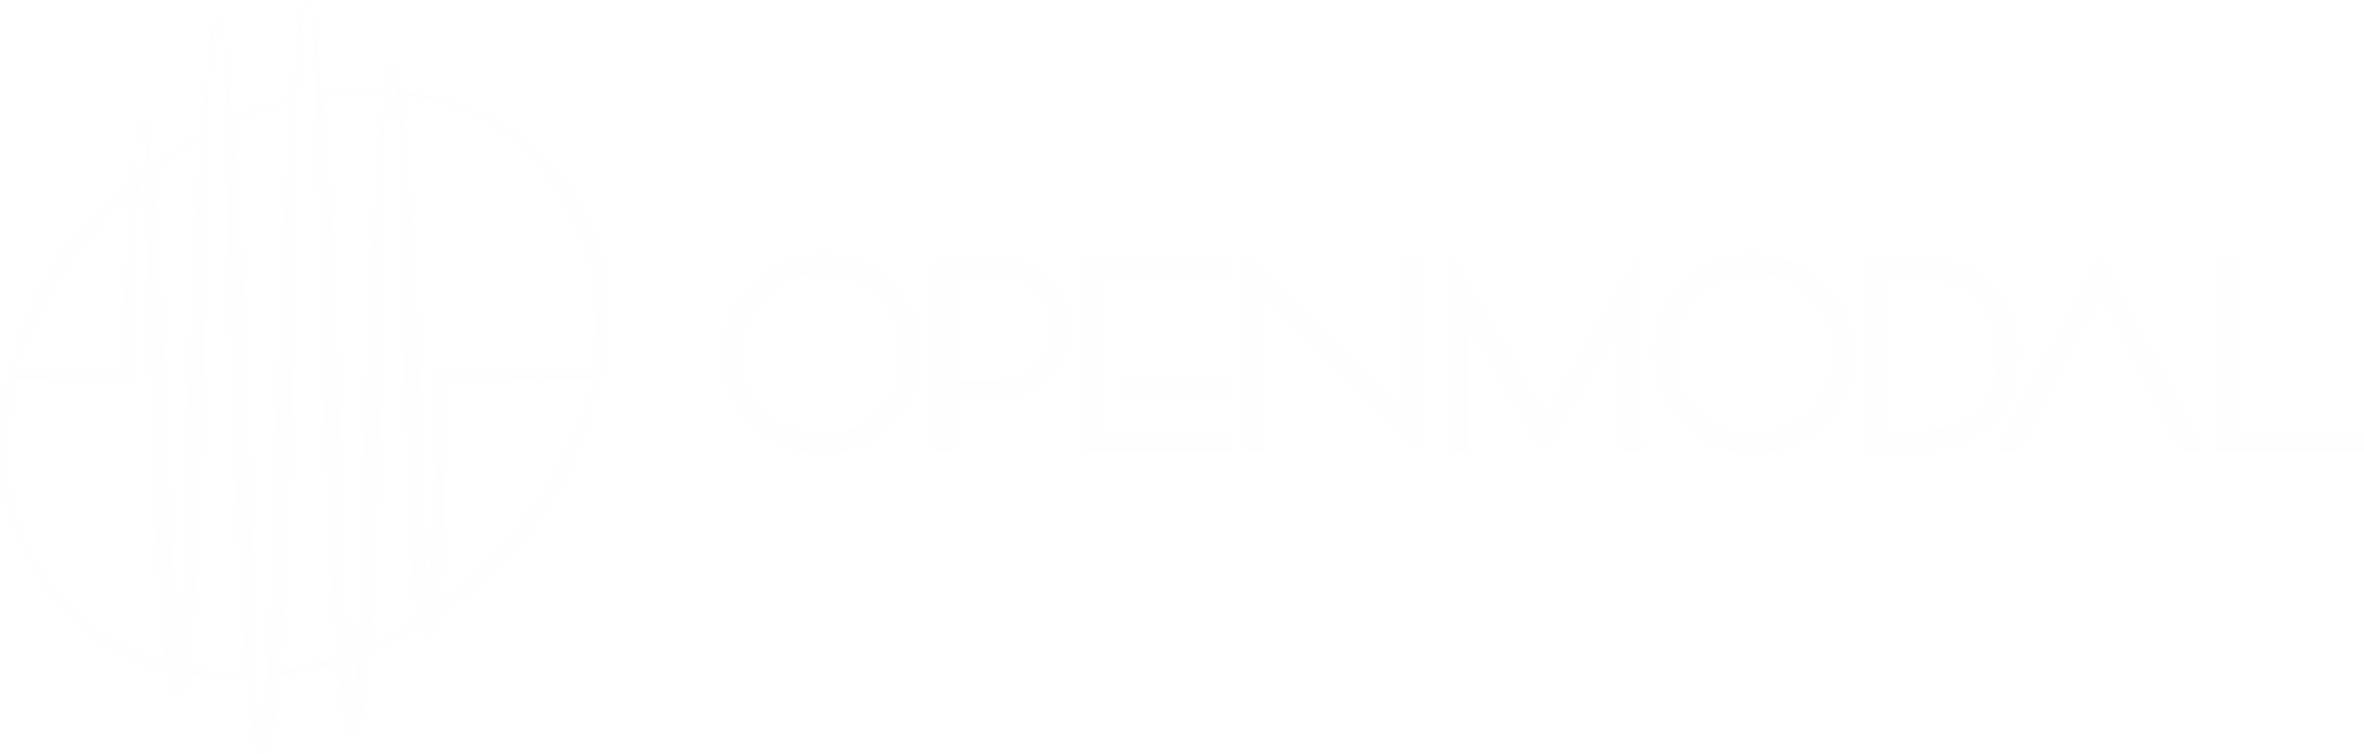 OpenModal